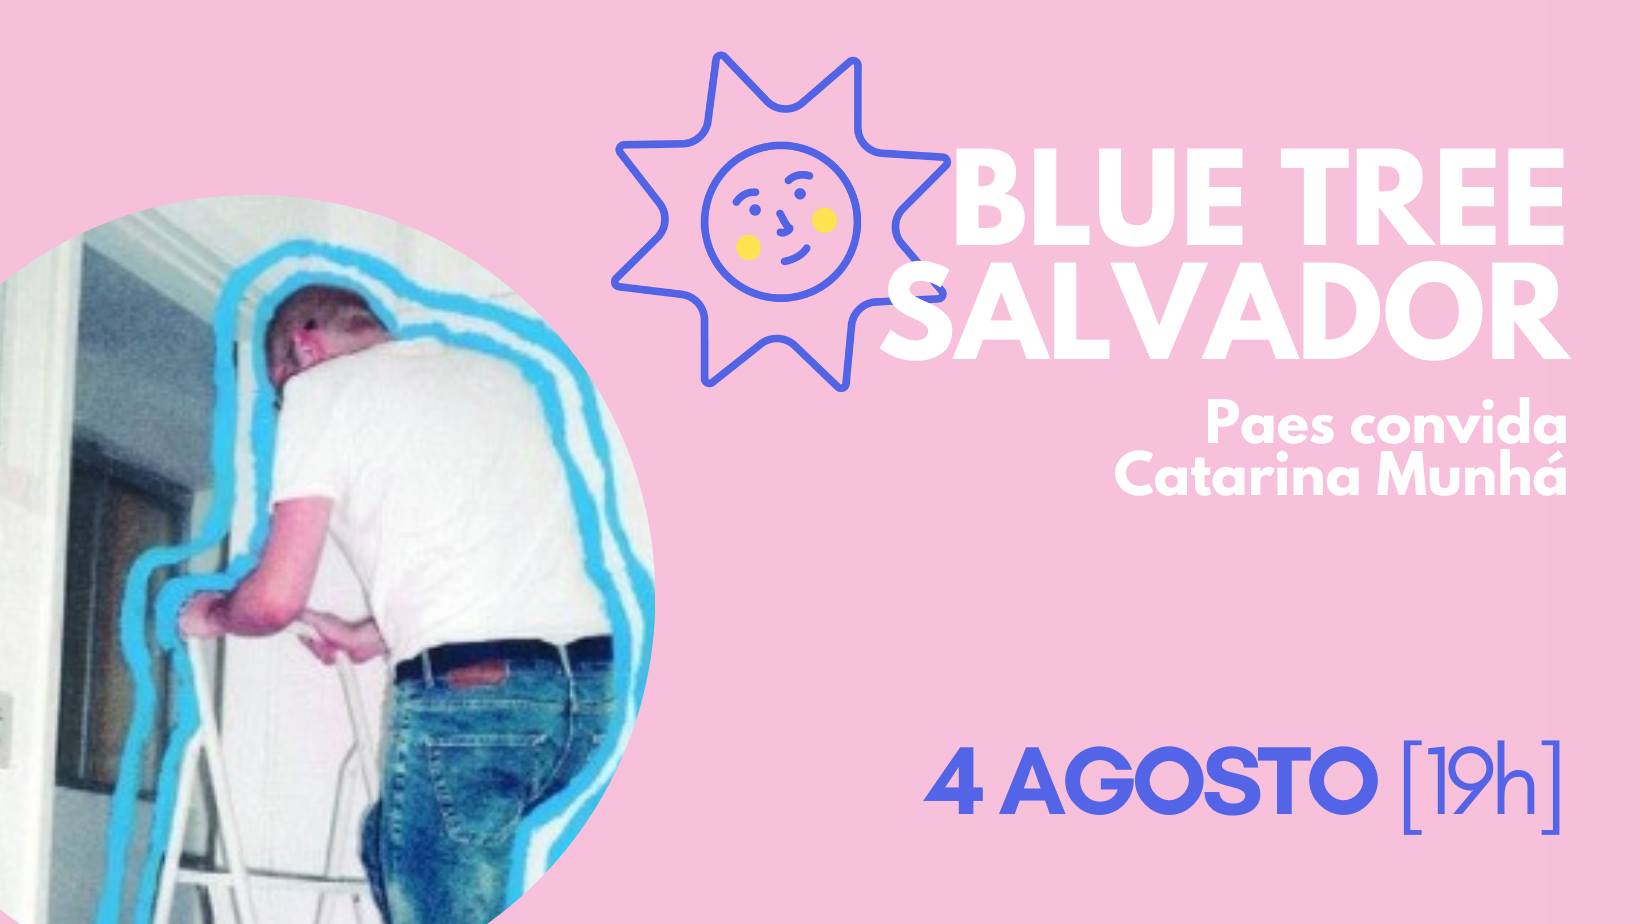 BLUE TREE SALVADOR | Paes convida Catarina Munhá